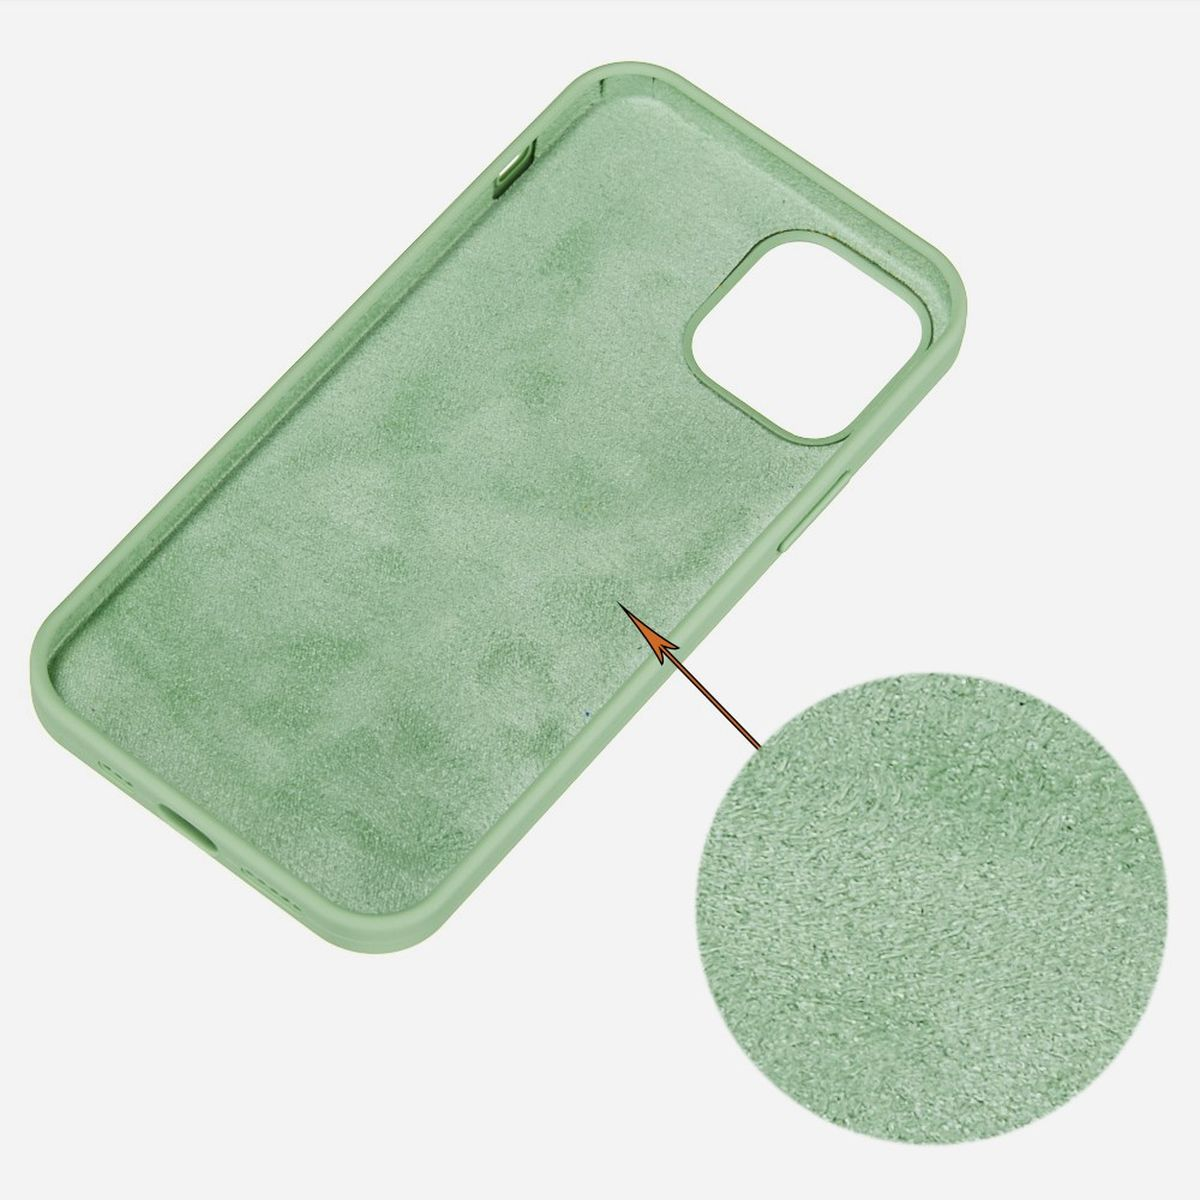 [6,1 Apple, Handycase aus Zoll], COVERKINGZ 13 Grün Backcover, Silikon, iPhone